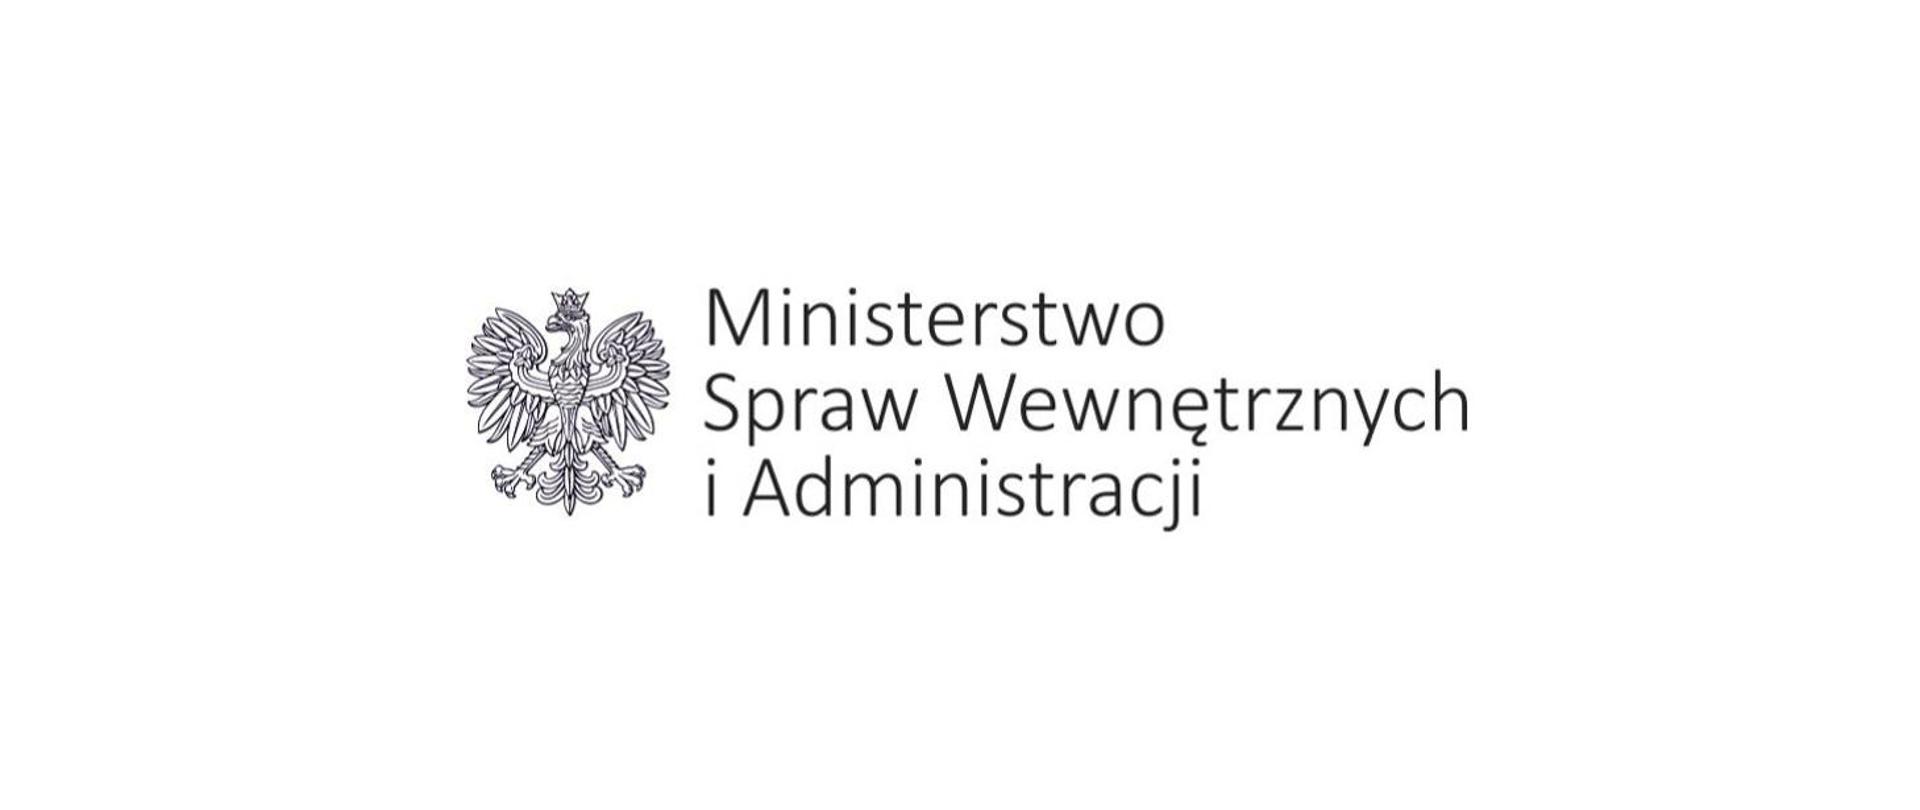 Biało-czarne zdjęcie przedstawia orła w koronie i napis ministerstwo spraw wewnętrznych i administracji